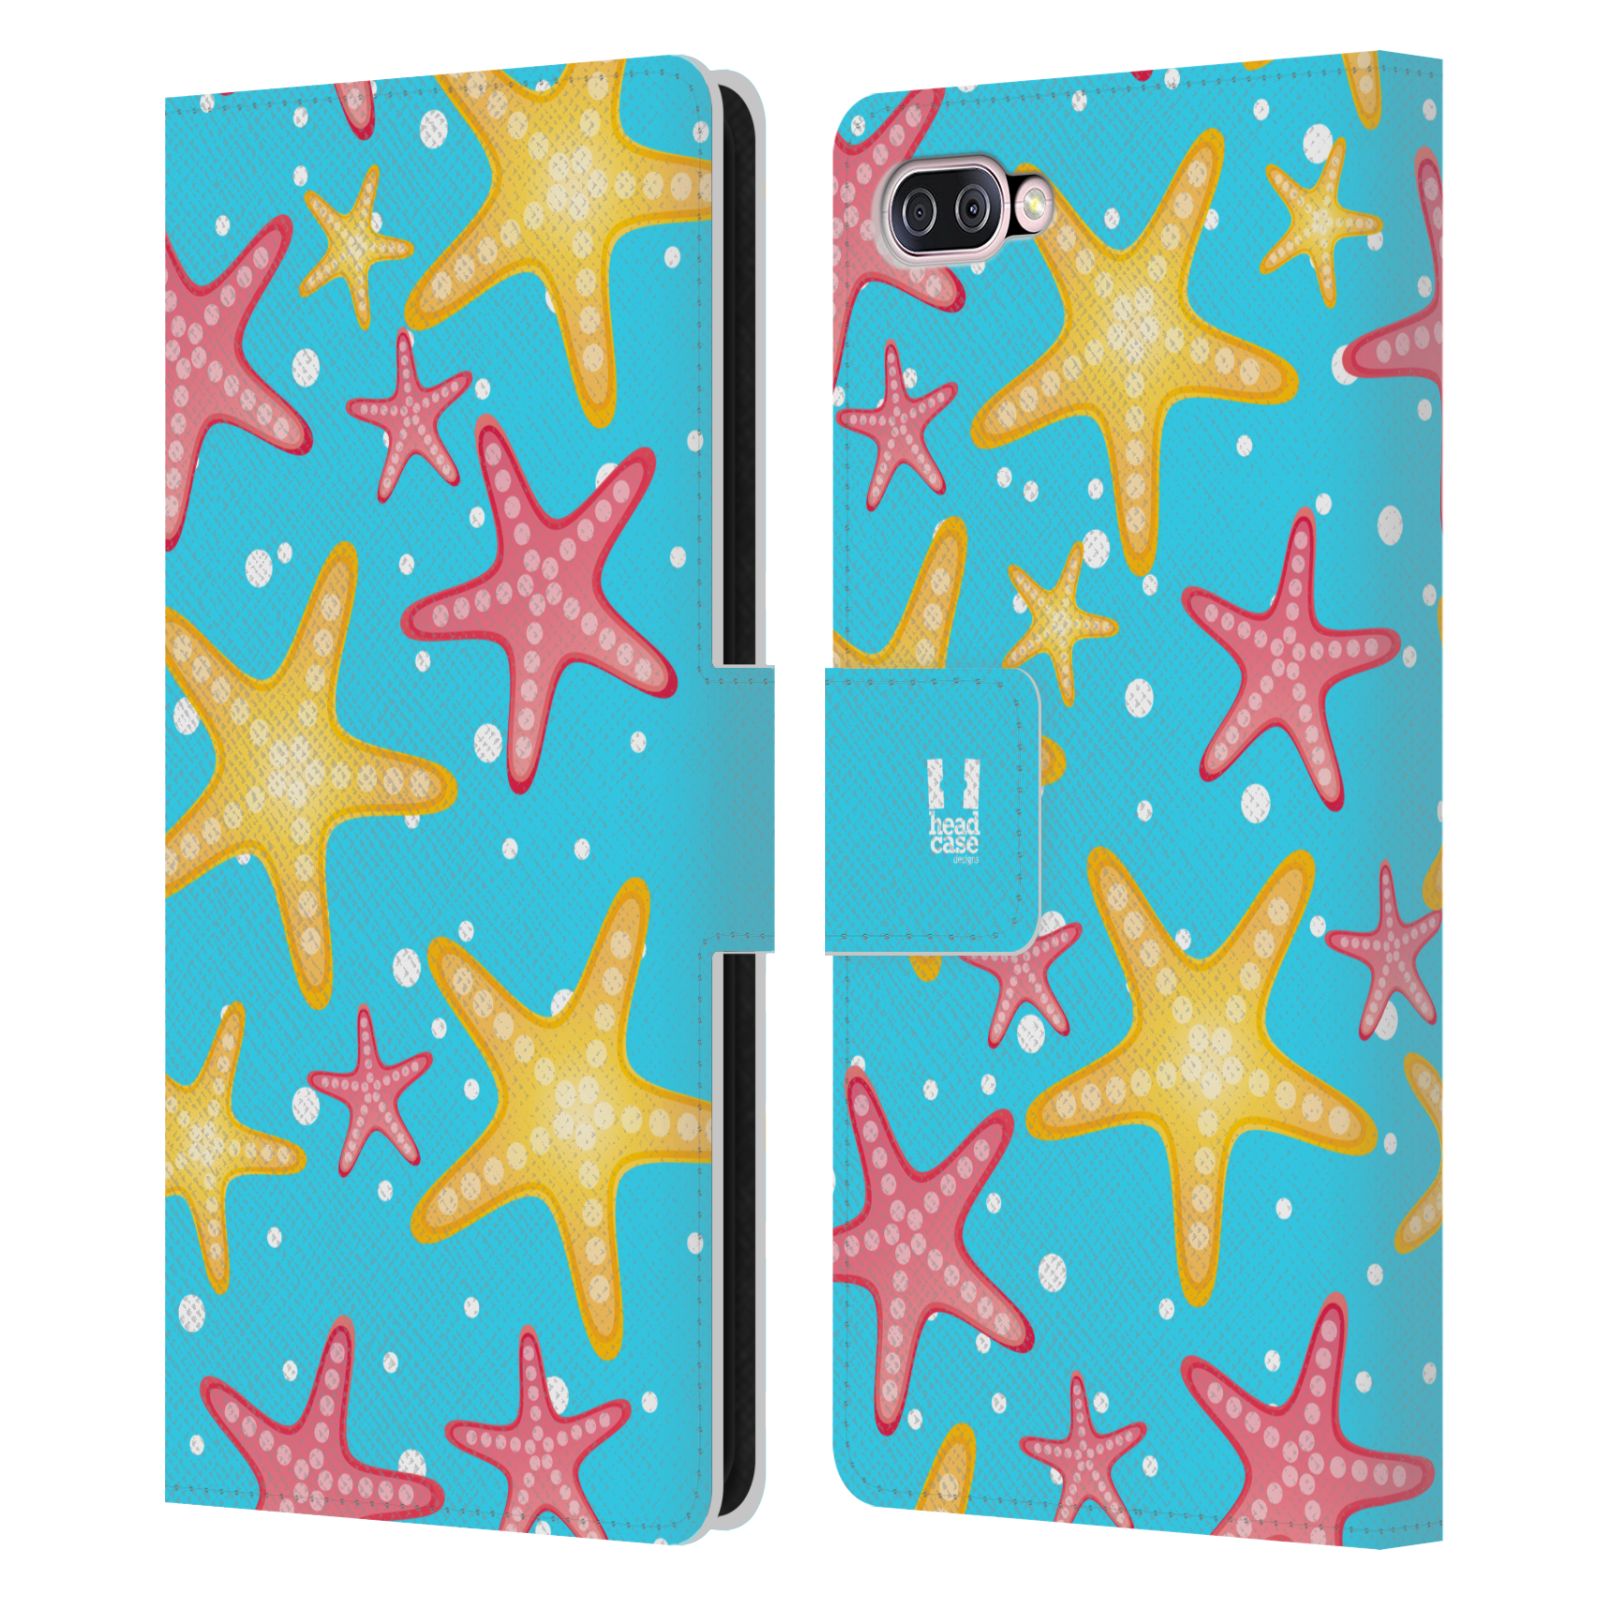 Pouzdro pro mobil Asus Zenfone 4 Max (ZC554KL)  - Mořský vzor - barevné hvězdy